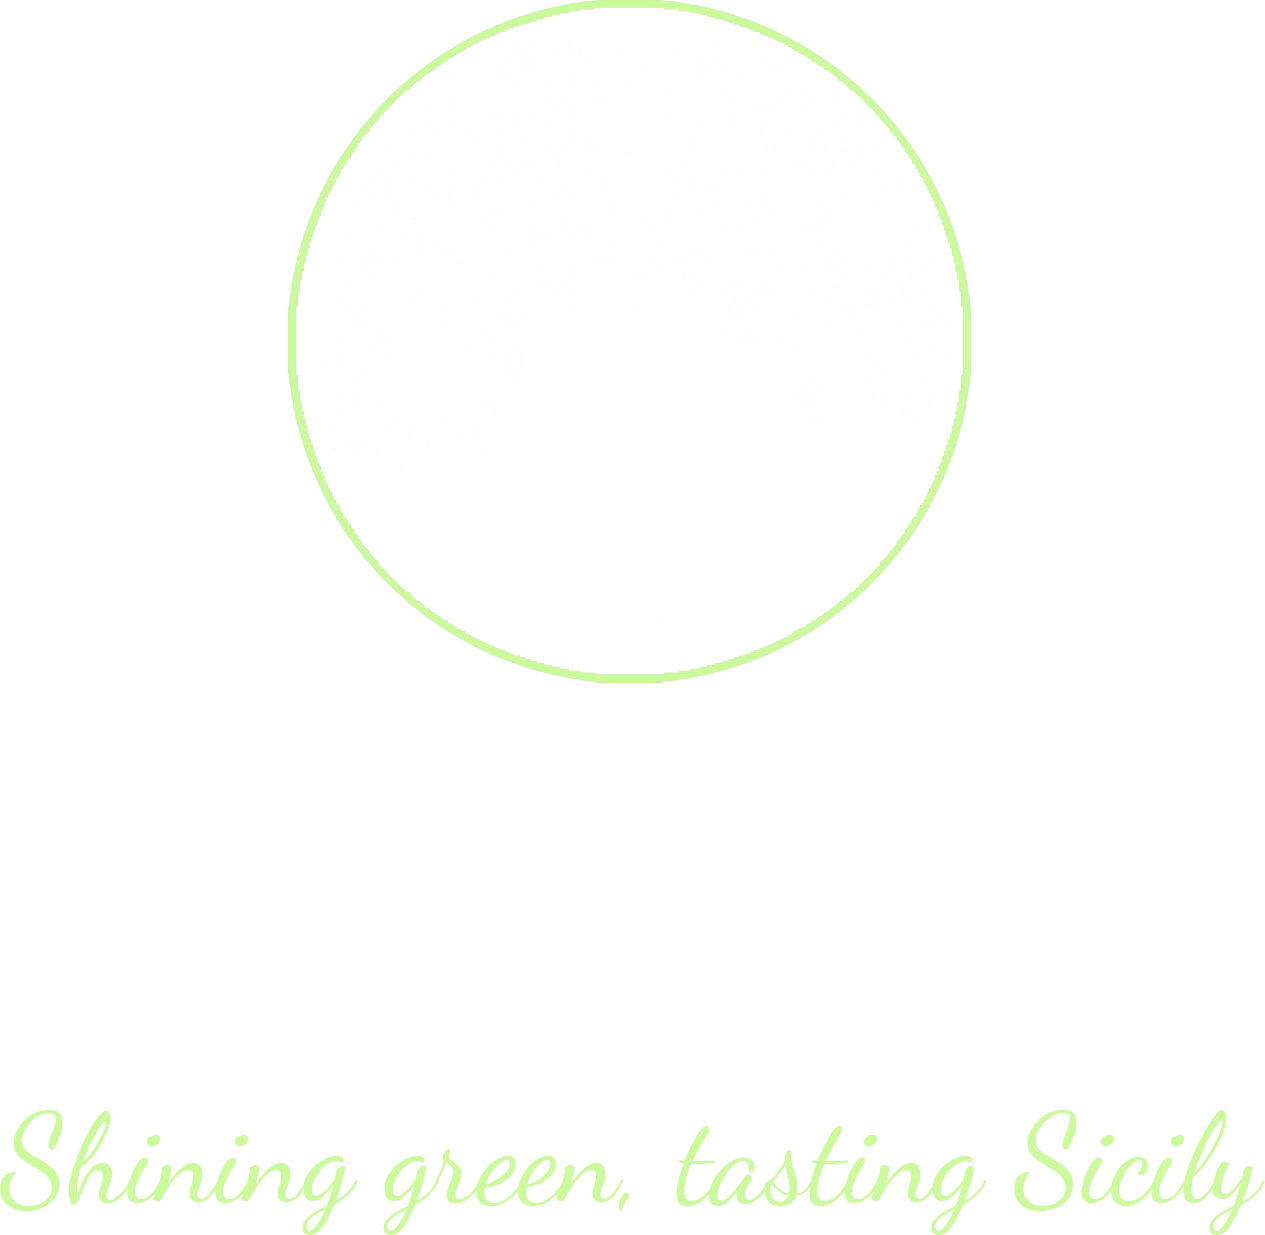 Nocella olive oil Logo